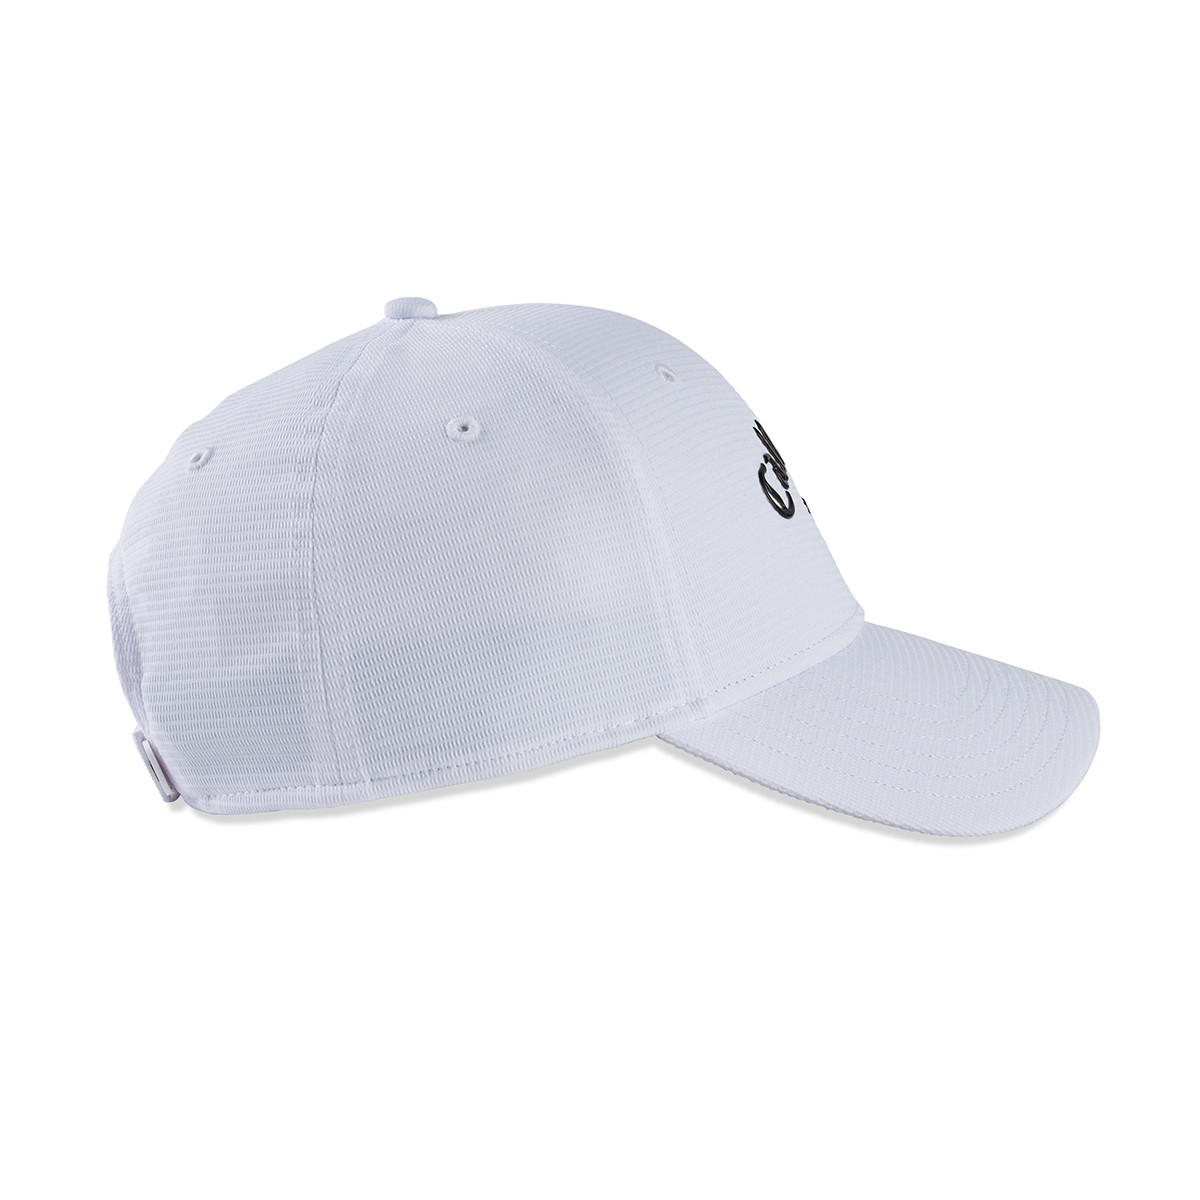 Callaway Liquid Metal Cap White/Black | Men's Golf Hats, Visors & Caps |  DIGITALGOLF